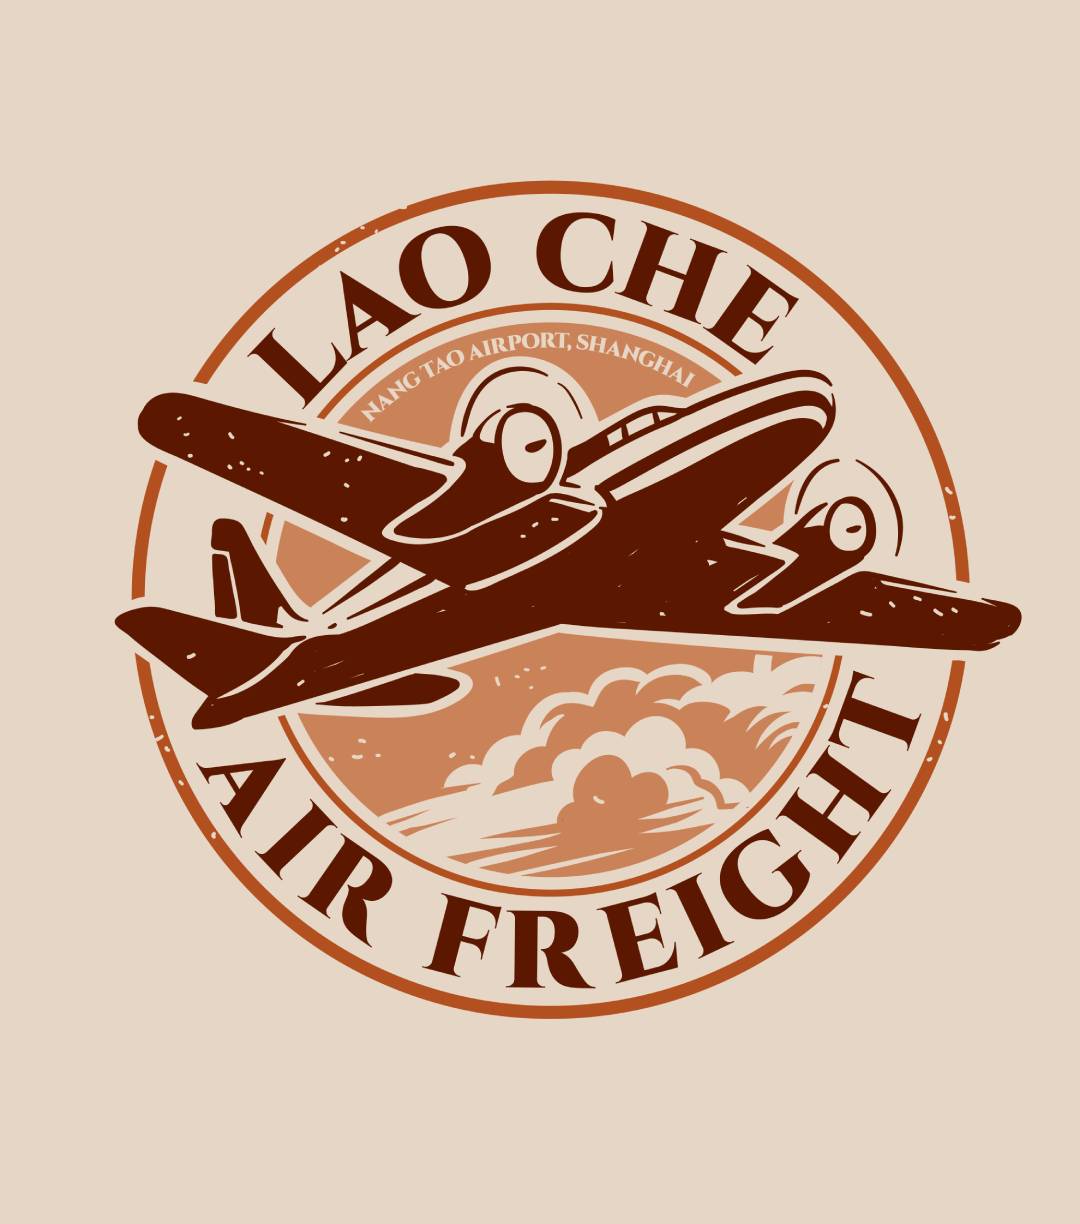 Lao Che Air Freight Shirt